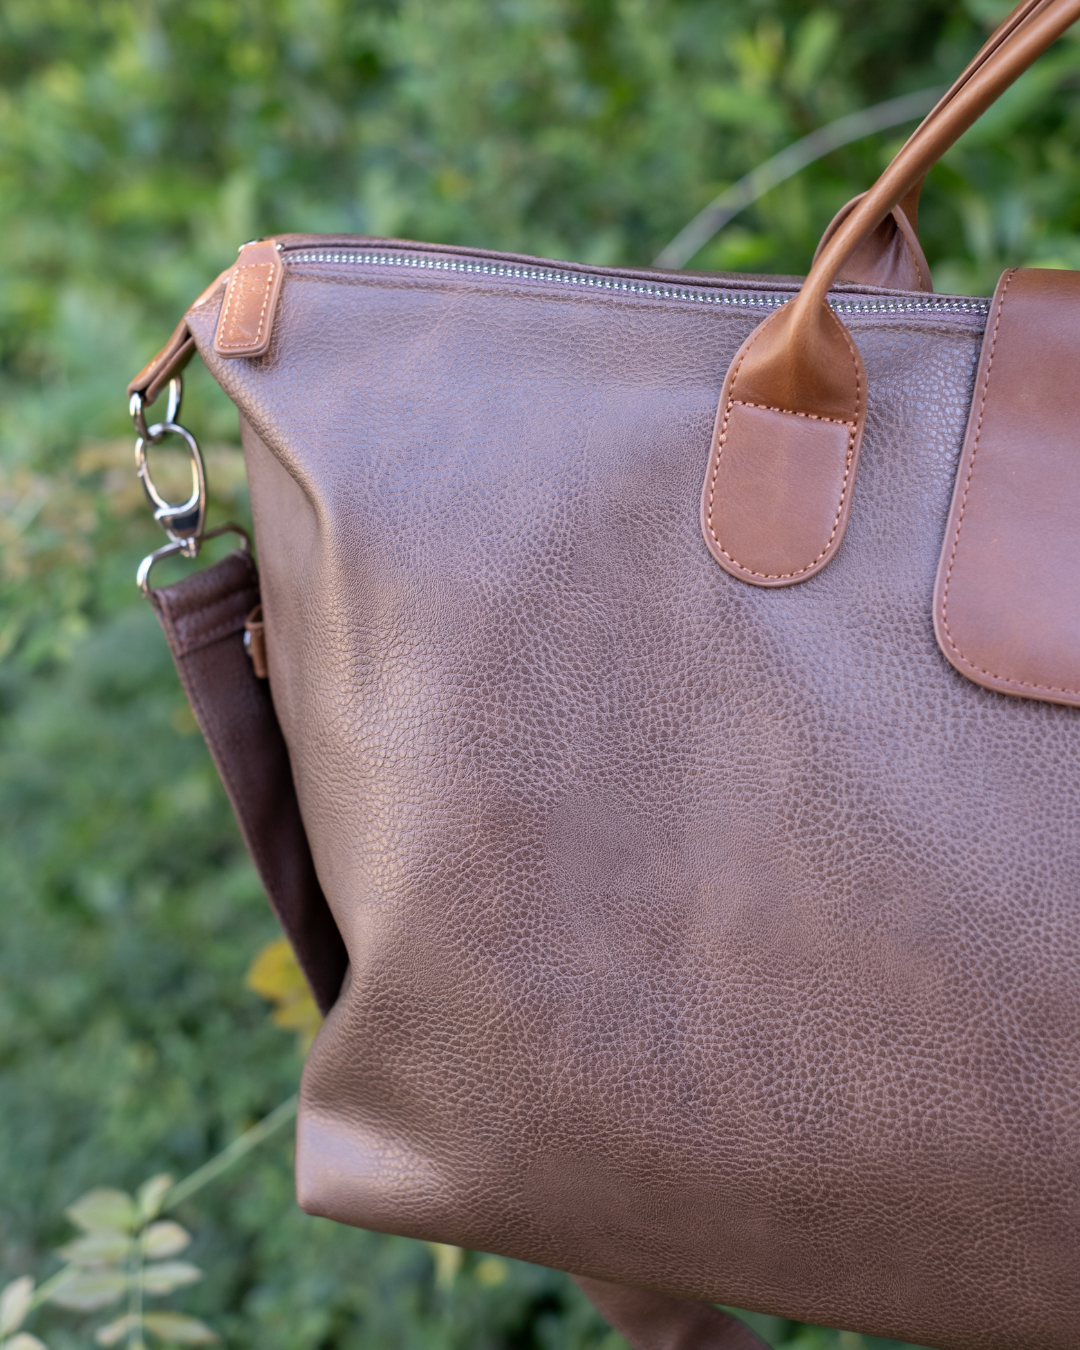 Mercer Brown Vegan Leather Duffel Travel Bag Removable Shoulder Strap